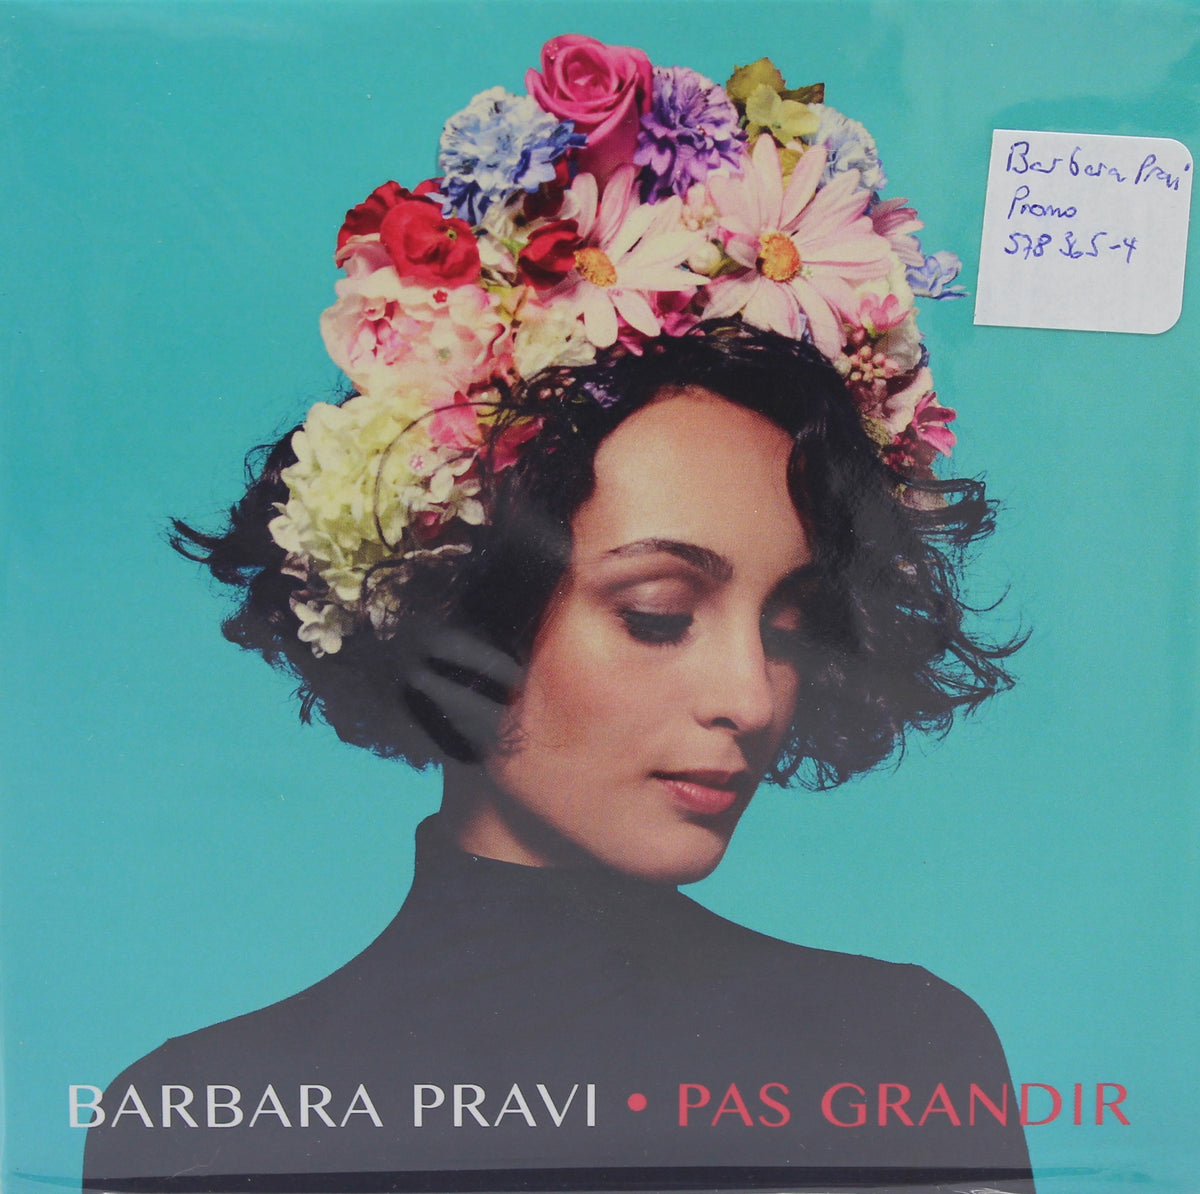 Barbara Pravi, Pas Grandir, CD Single Promo, France 2017